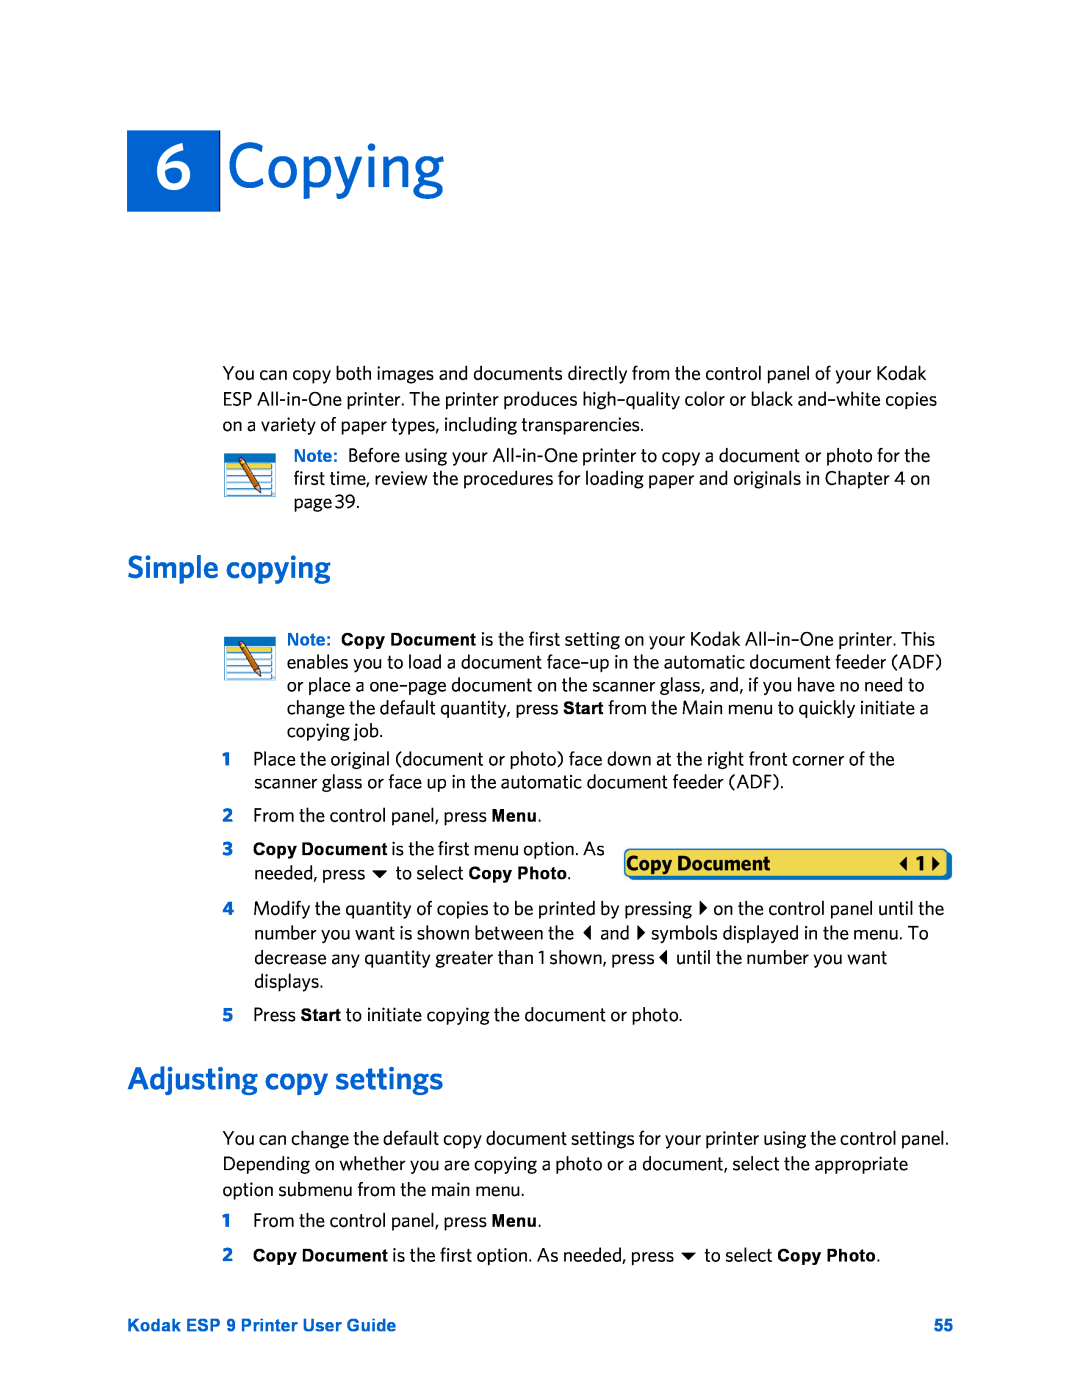 Kodak ESP 9 manual Copying, Simple copying, Adjusting copy settings, Copy Document 